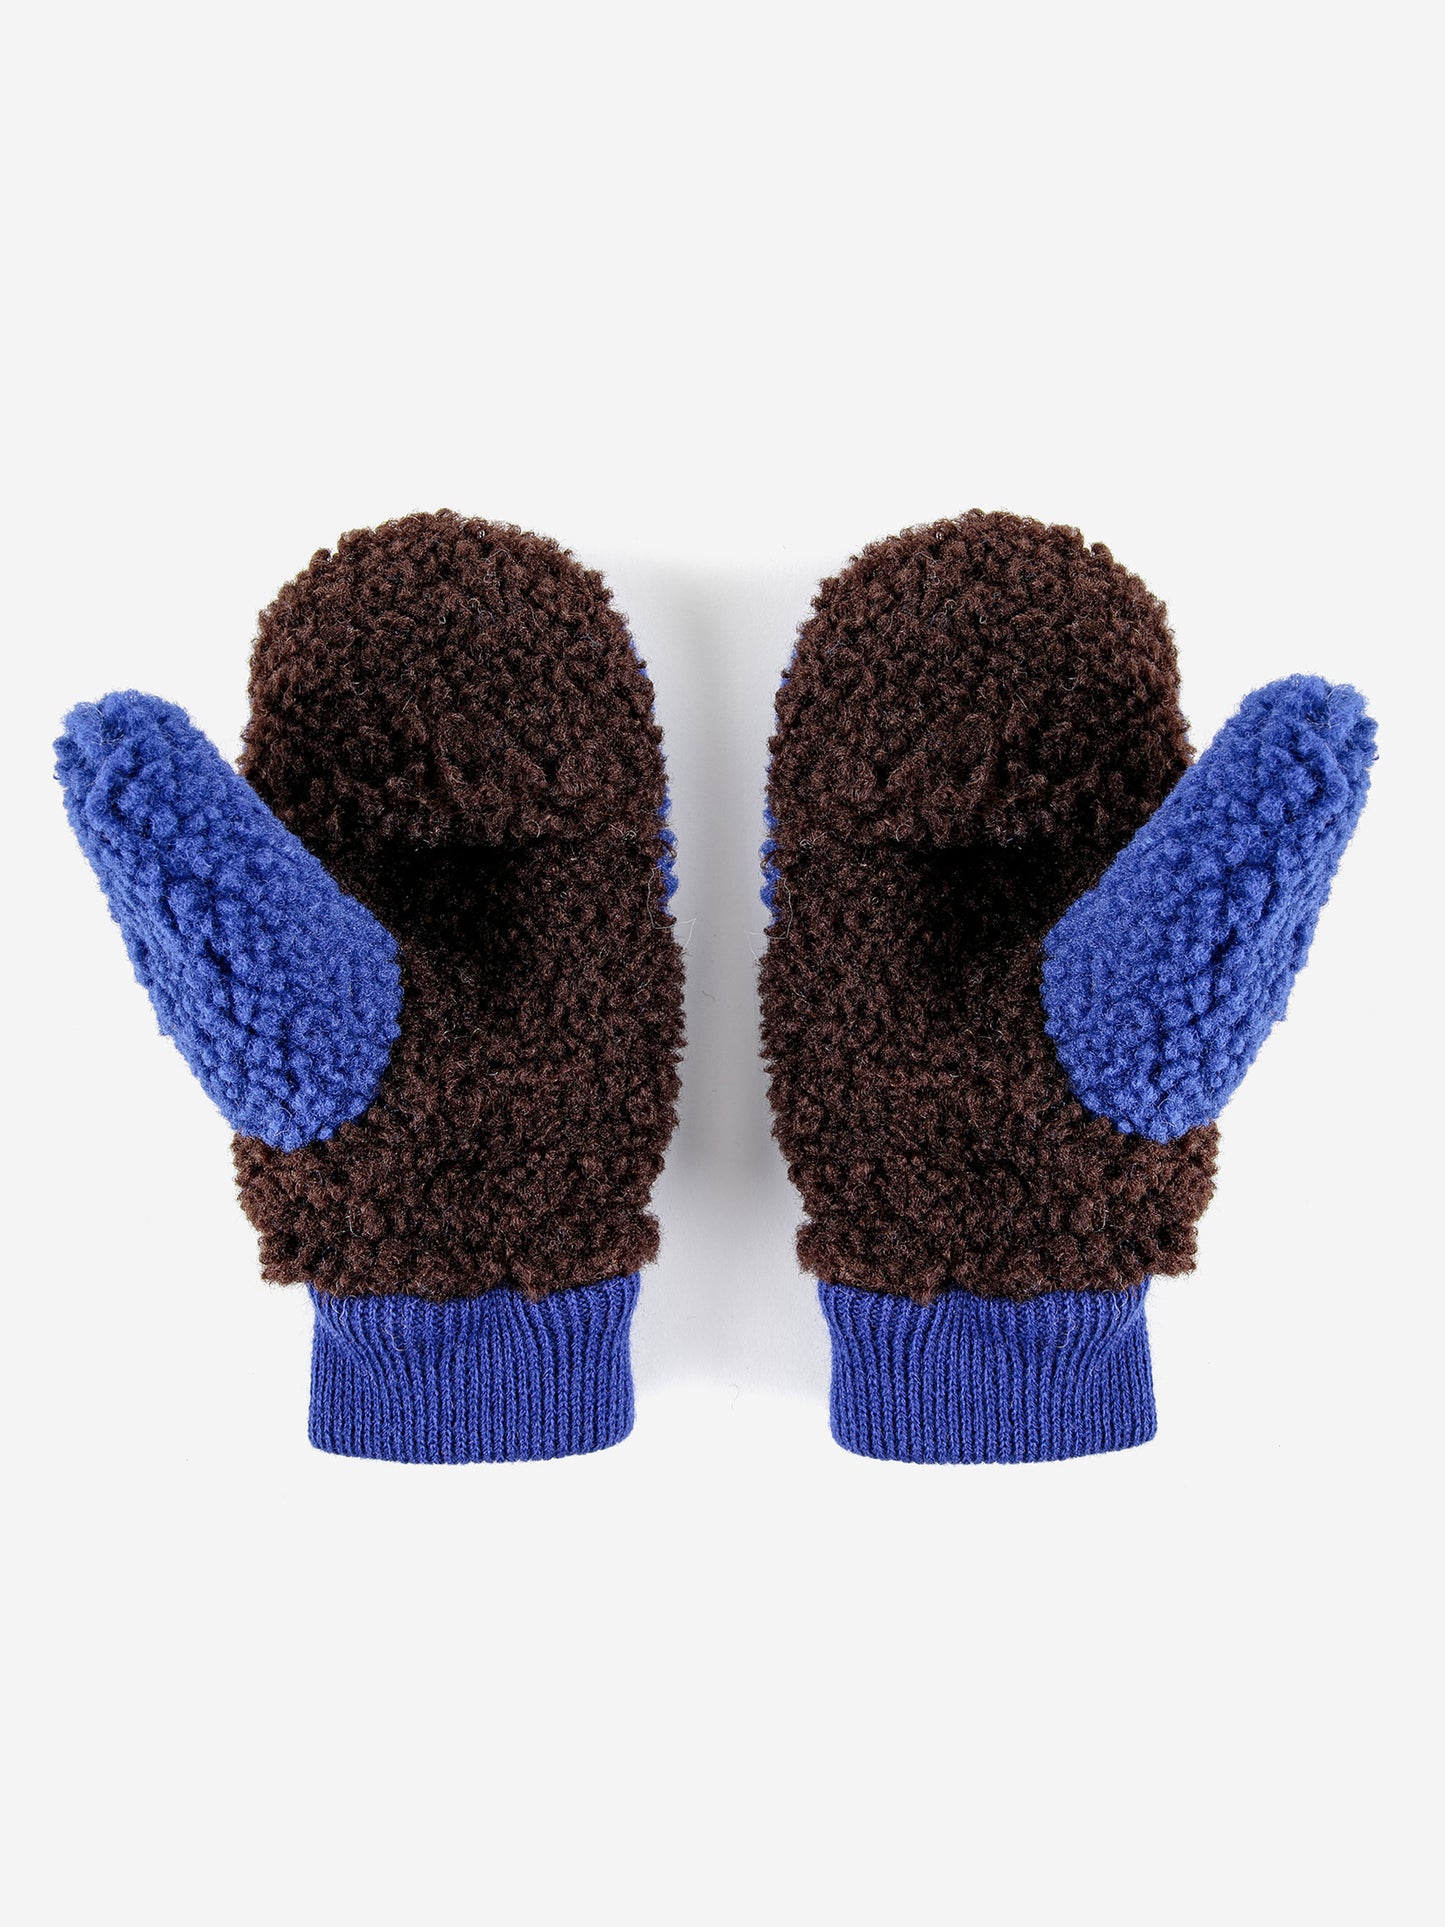 Sheepskin Color Block blue gloves